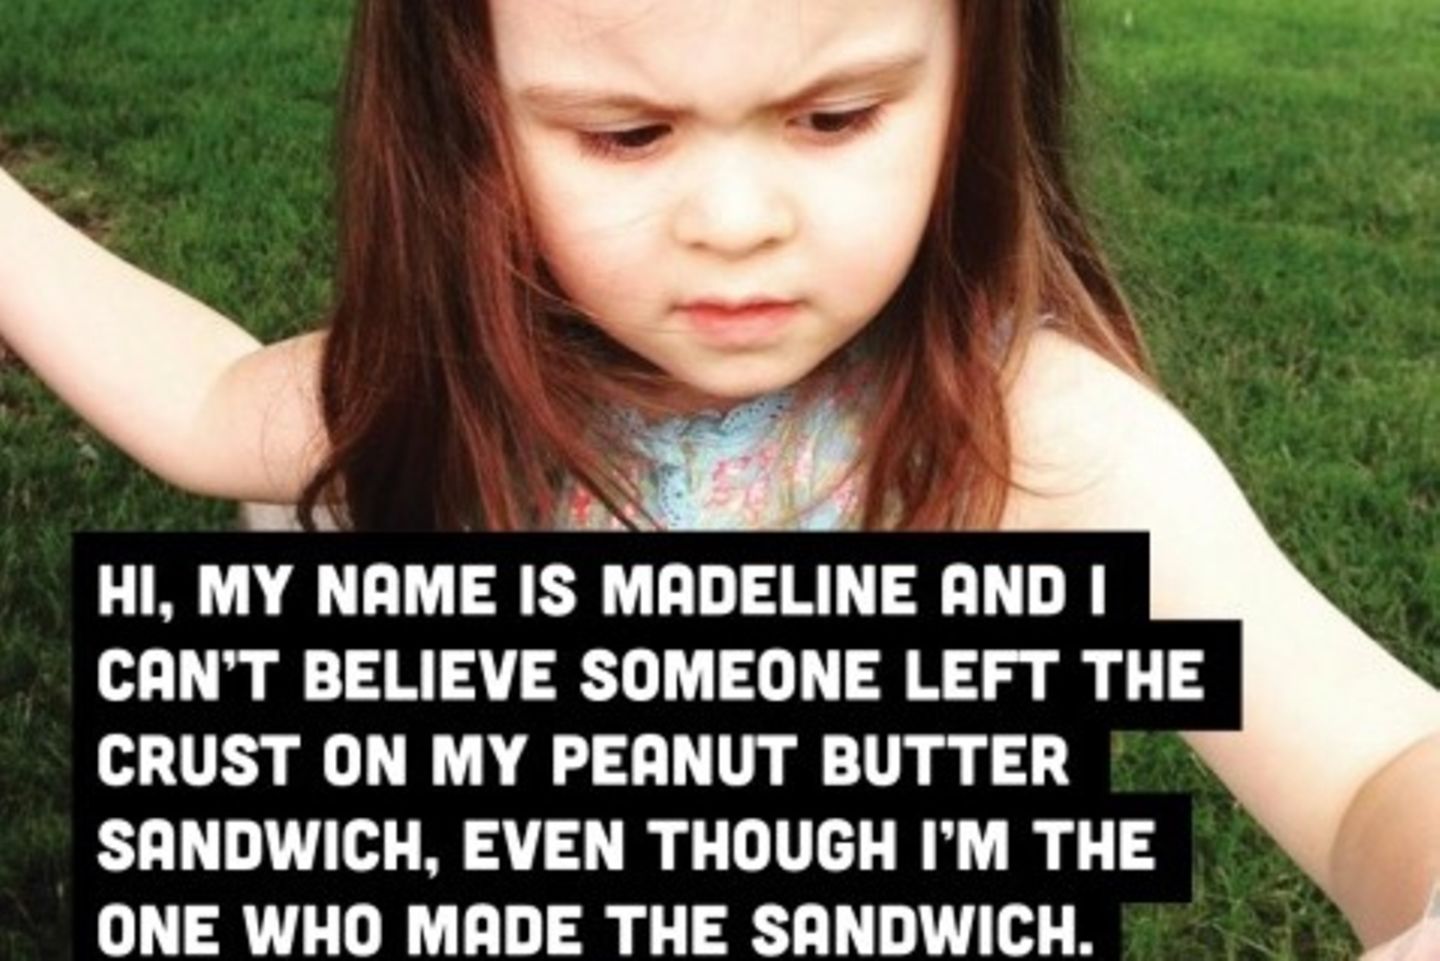 Hi, ich heiße Madeline und kann es einfach nicht glauben, dass jemand die Ränder an meinem Erdnussbutter-Sandwich drangelassen hat. Obwohl ich das Sandwich selbst gemacht habe.